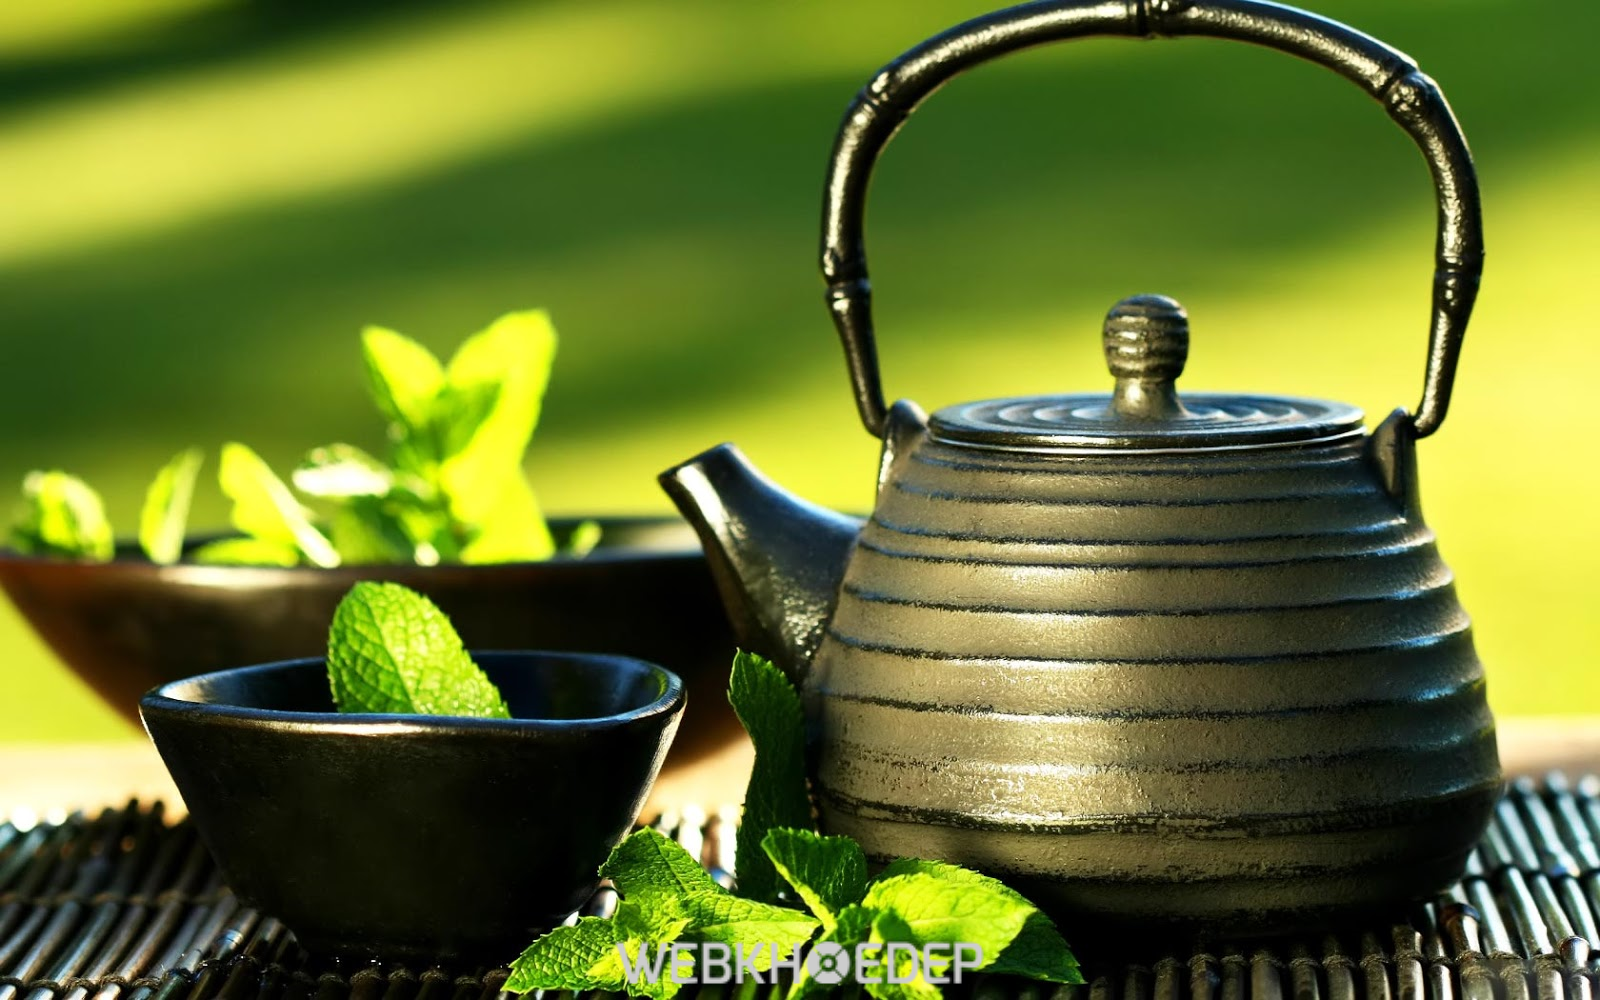 Một cách giảm cân hiệu quả là uống trà xanh. Trong trà xanh có hợp chất giúp thải độc, tăng cường sức khỏe và làm vóc dáng trở nên thon gọn